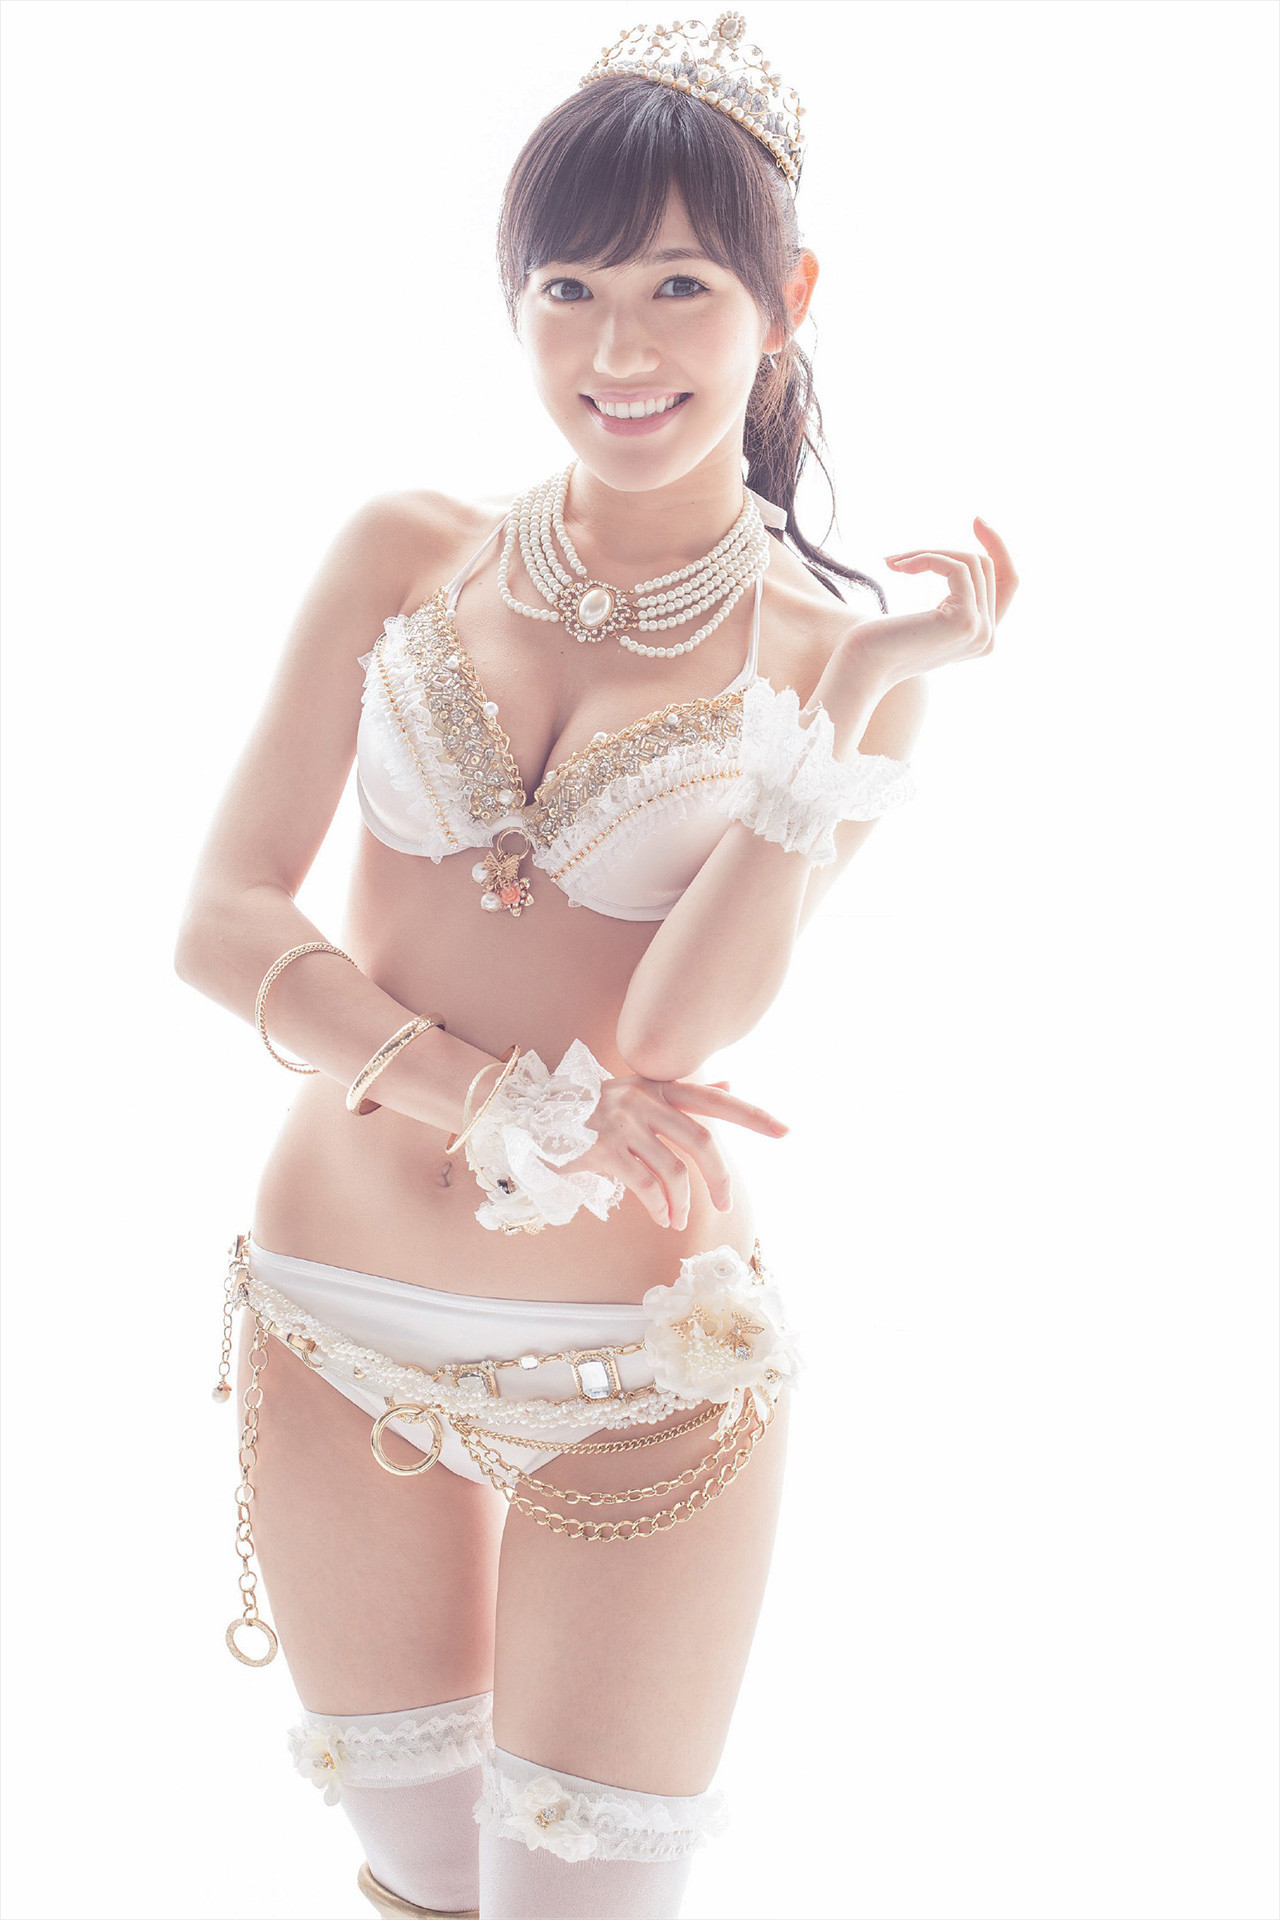 07 - Watanabe Mayu - Top 10 Most Erotic AKB48 SKE48 NMB48 HKT48 Members